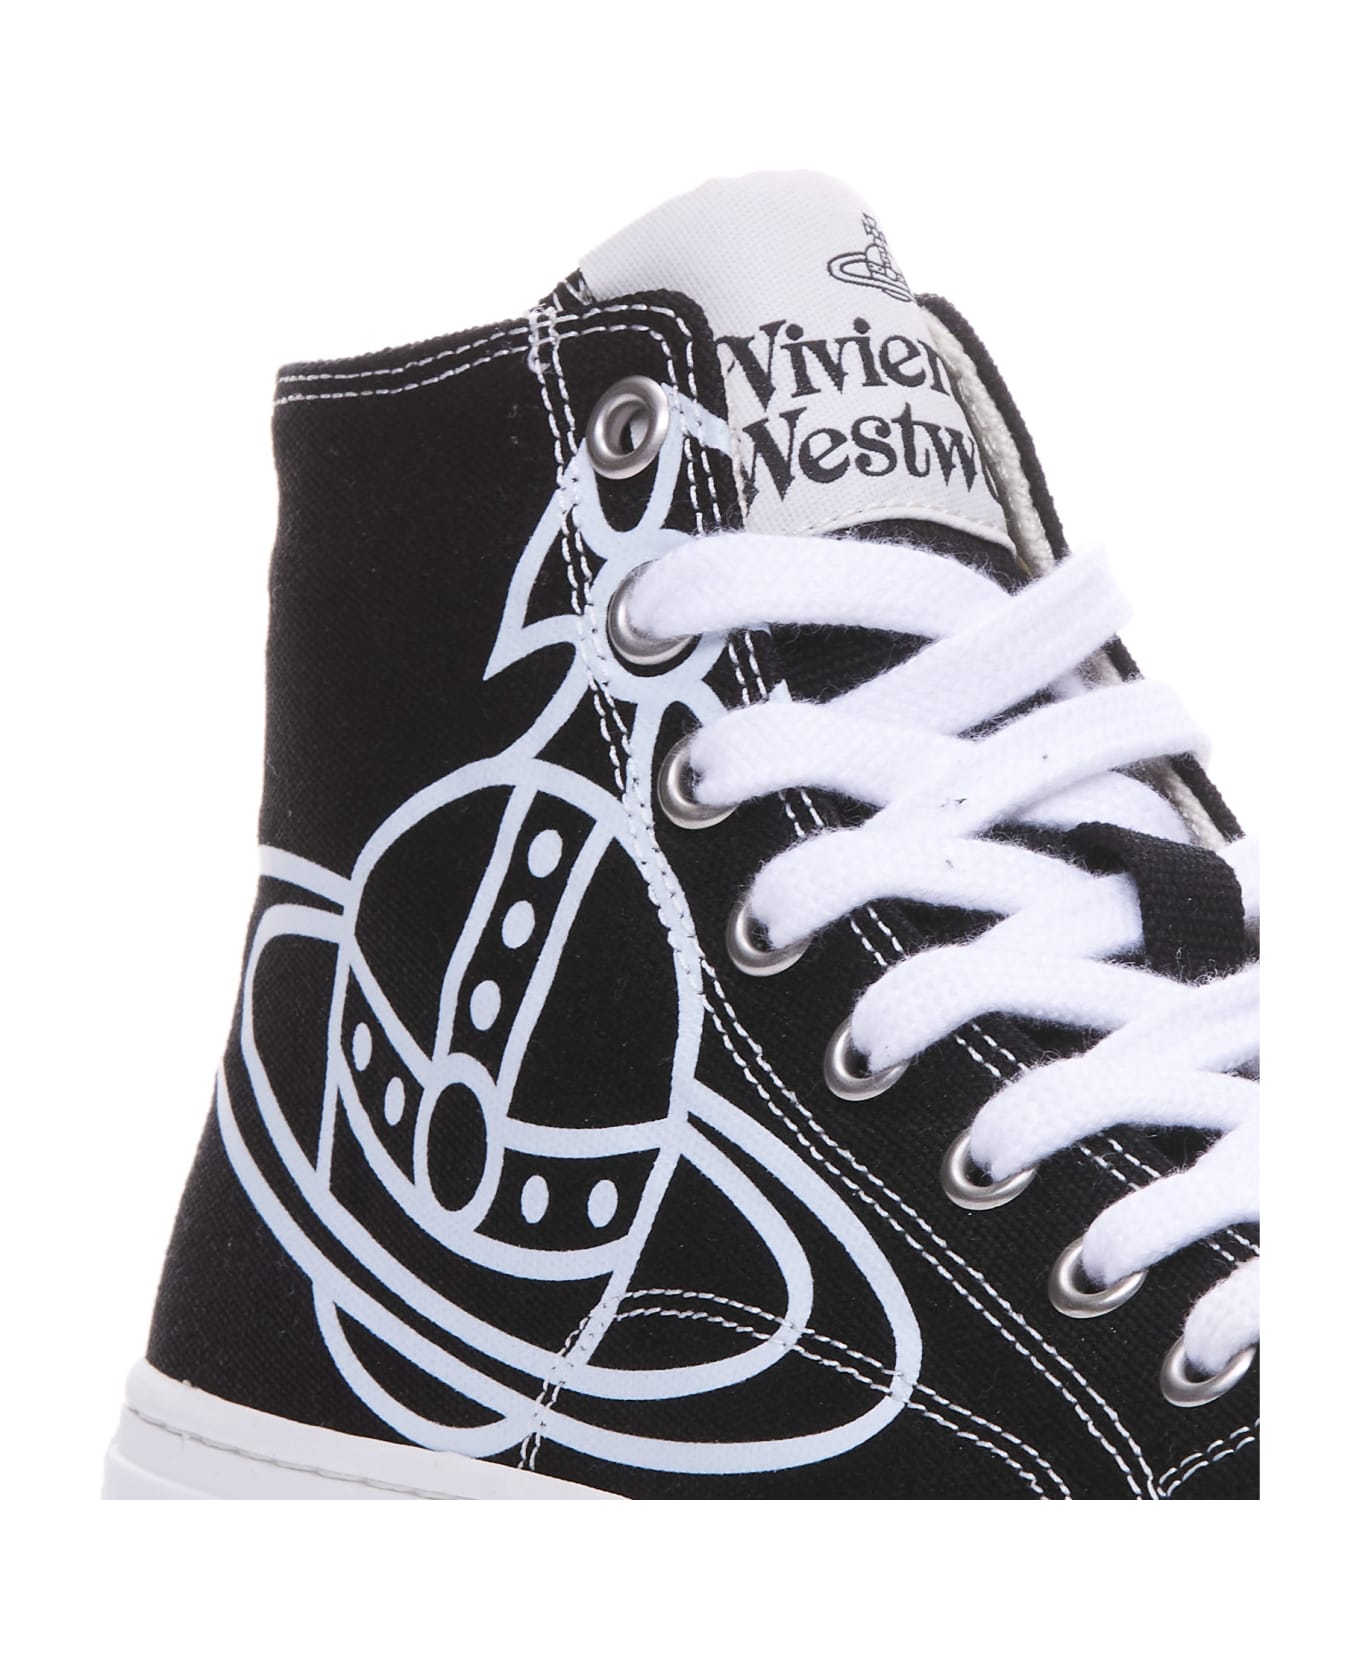 Vivienne Westwood Plimsoll High Sneakers - Black スニーカー